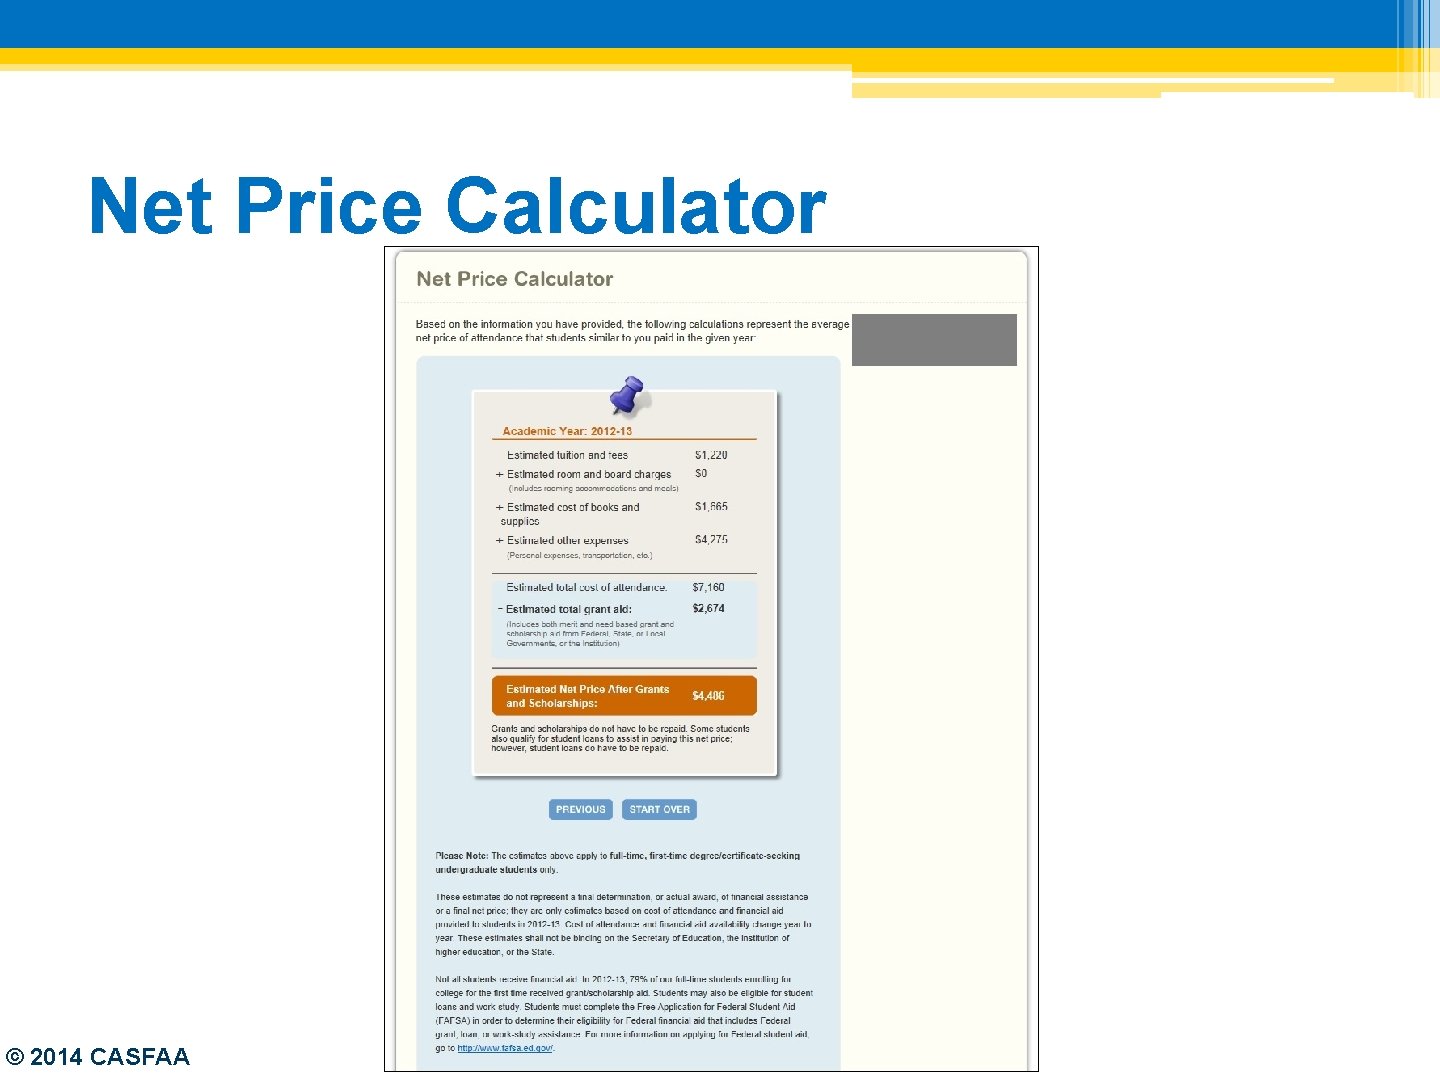 Net Price Calculator © 2014 CASFAA 